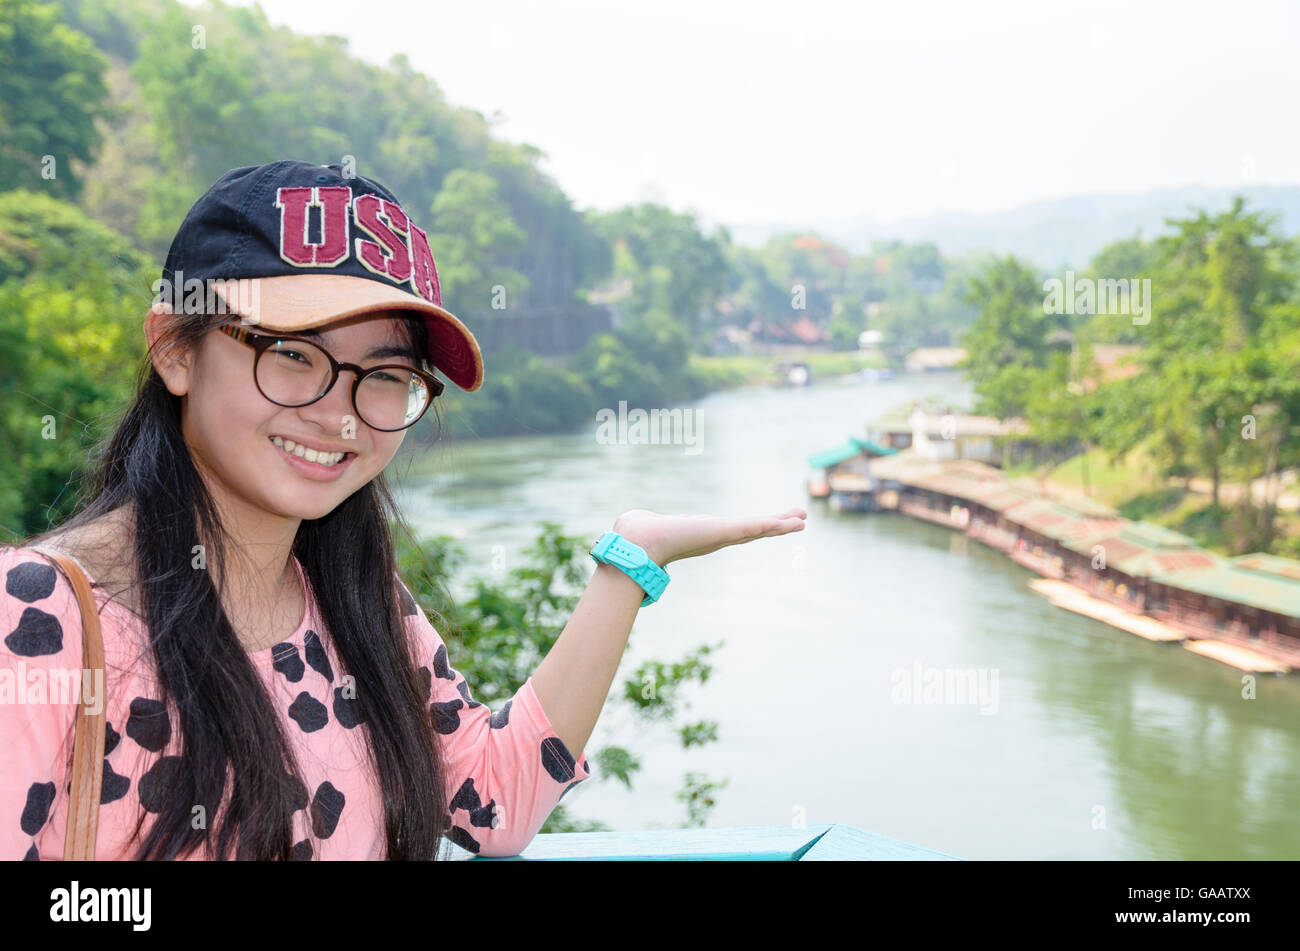 Tourist girl mostrar las manos le invita a visitar el hermoso paisaje de muerte puente ferroviario sobre el río Kwai Noi en cueva Krasae ver Foto de stock